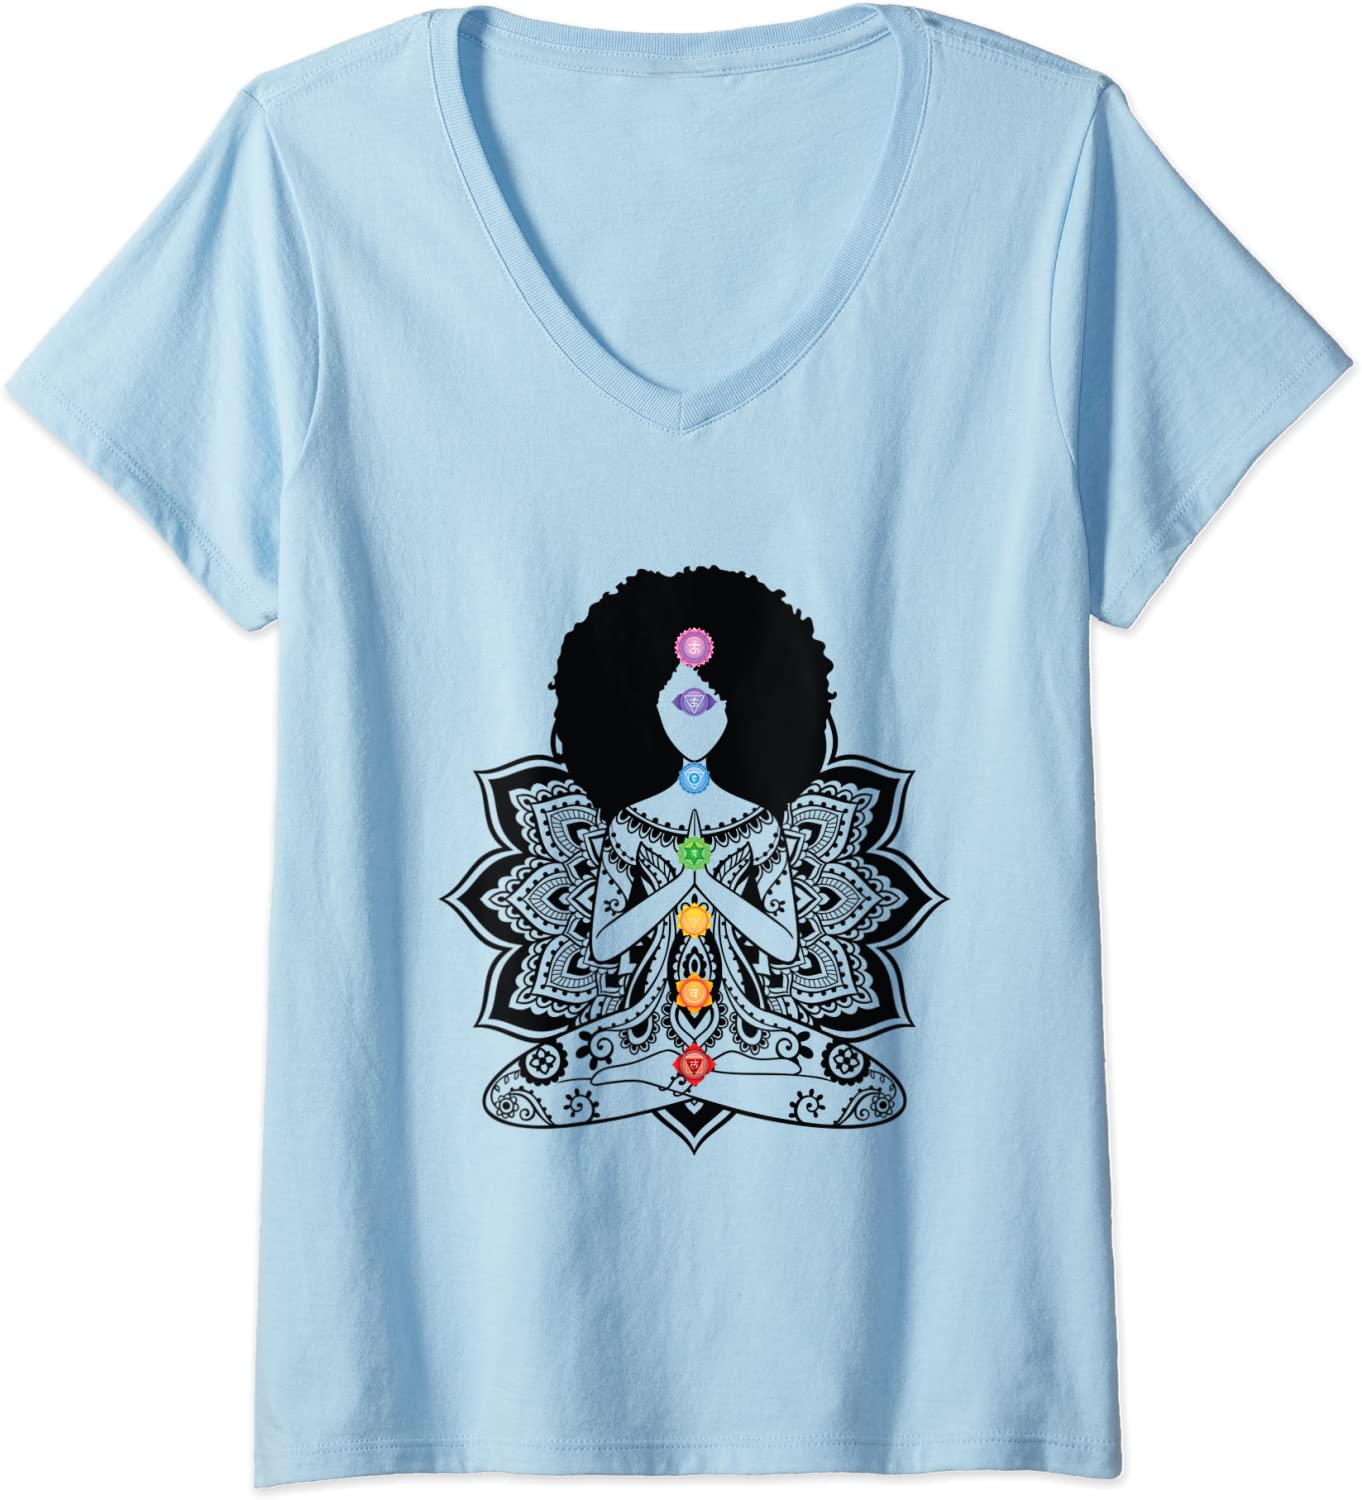 Buy Boho Organic Tshirt Women, Yoga Tshirt Women Gift, Meditation